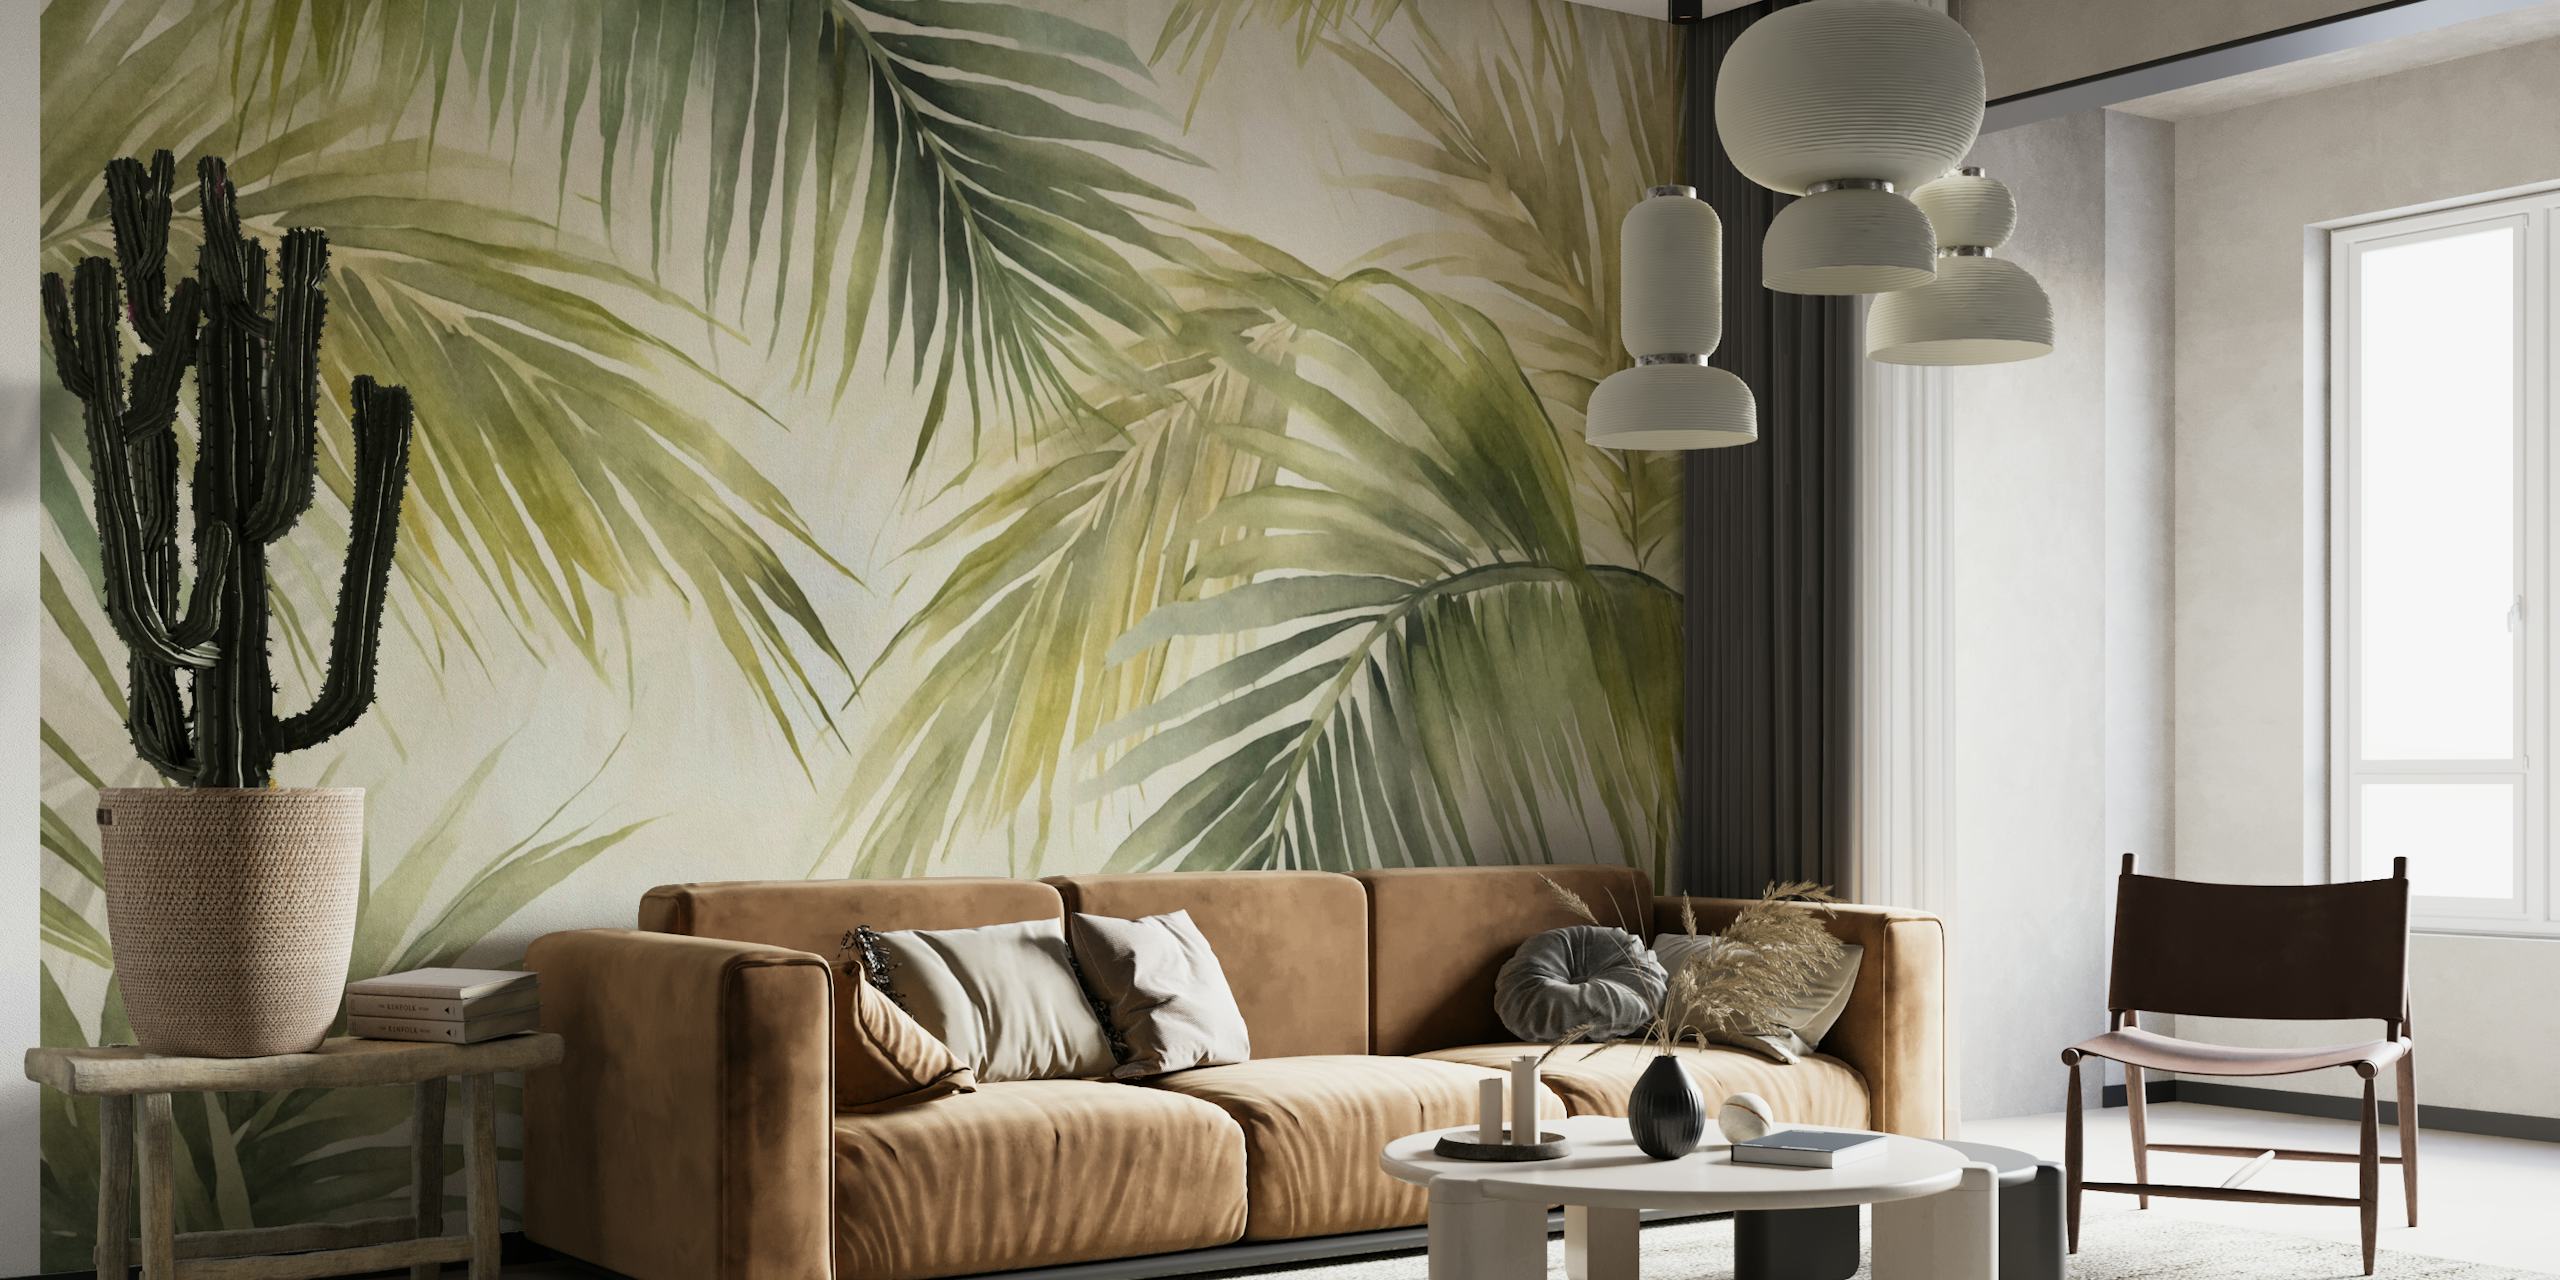 Tropical Island Palm Leaves aquarel groene muurschildering met weelderig groen